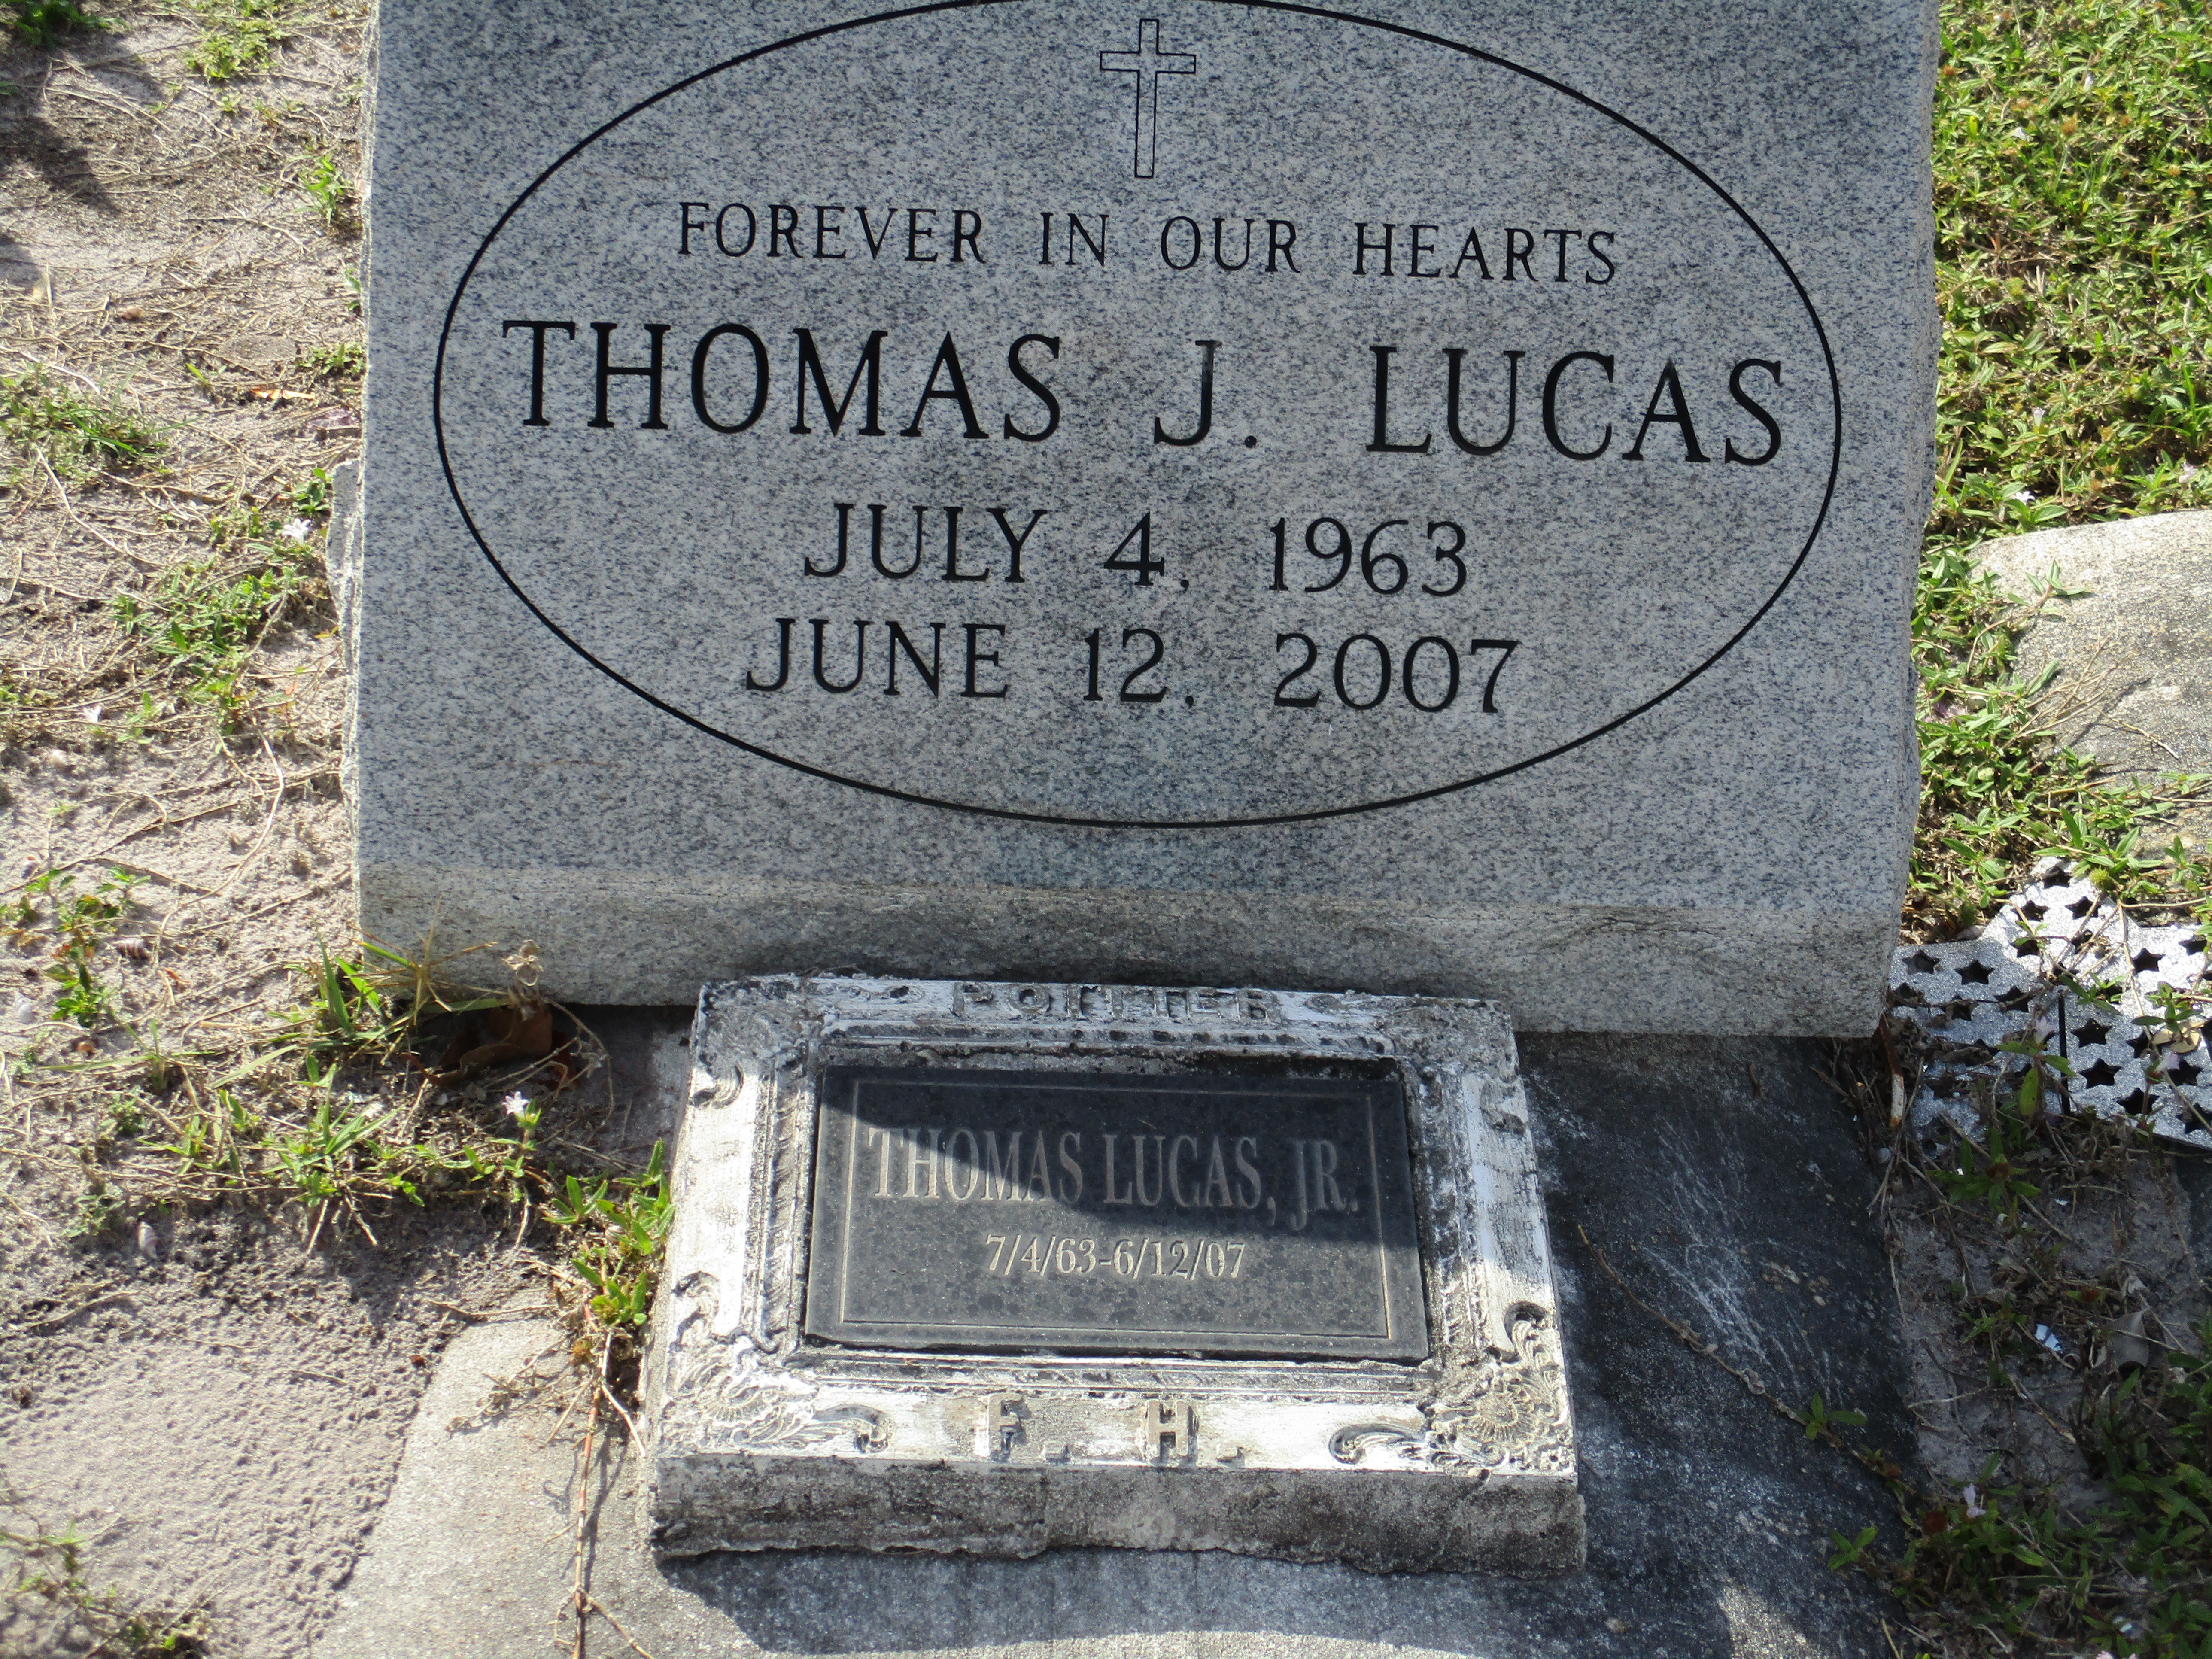 Thomas J Lucas, Jr